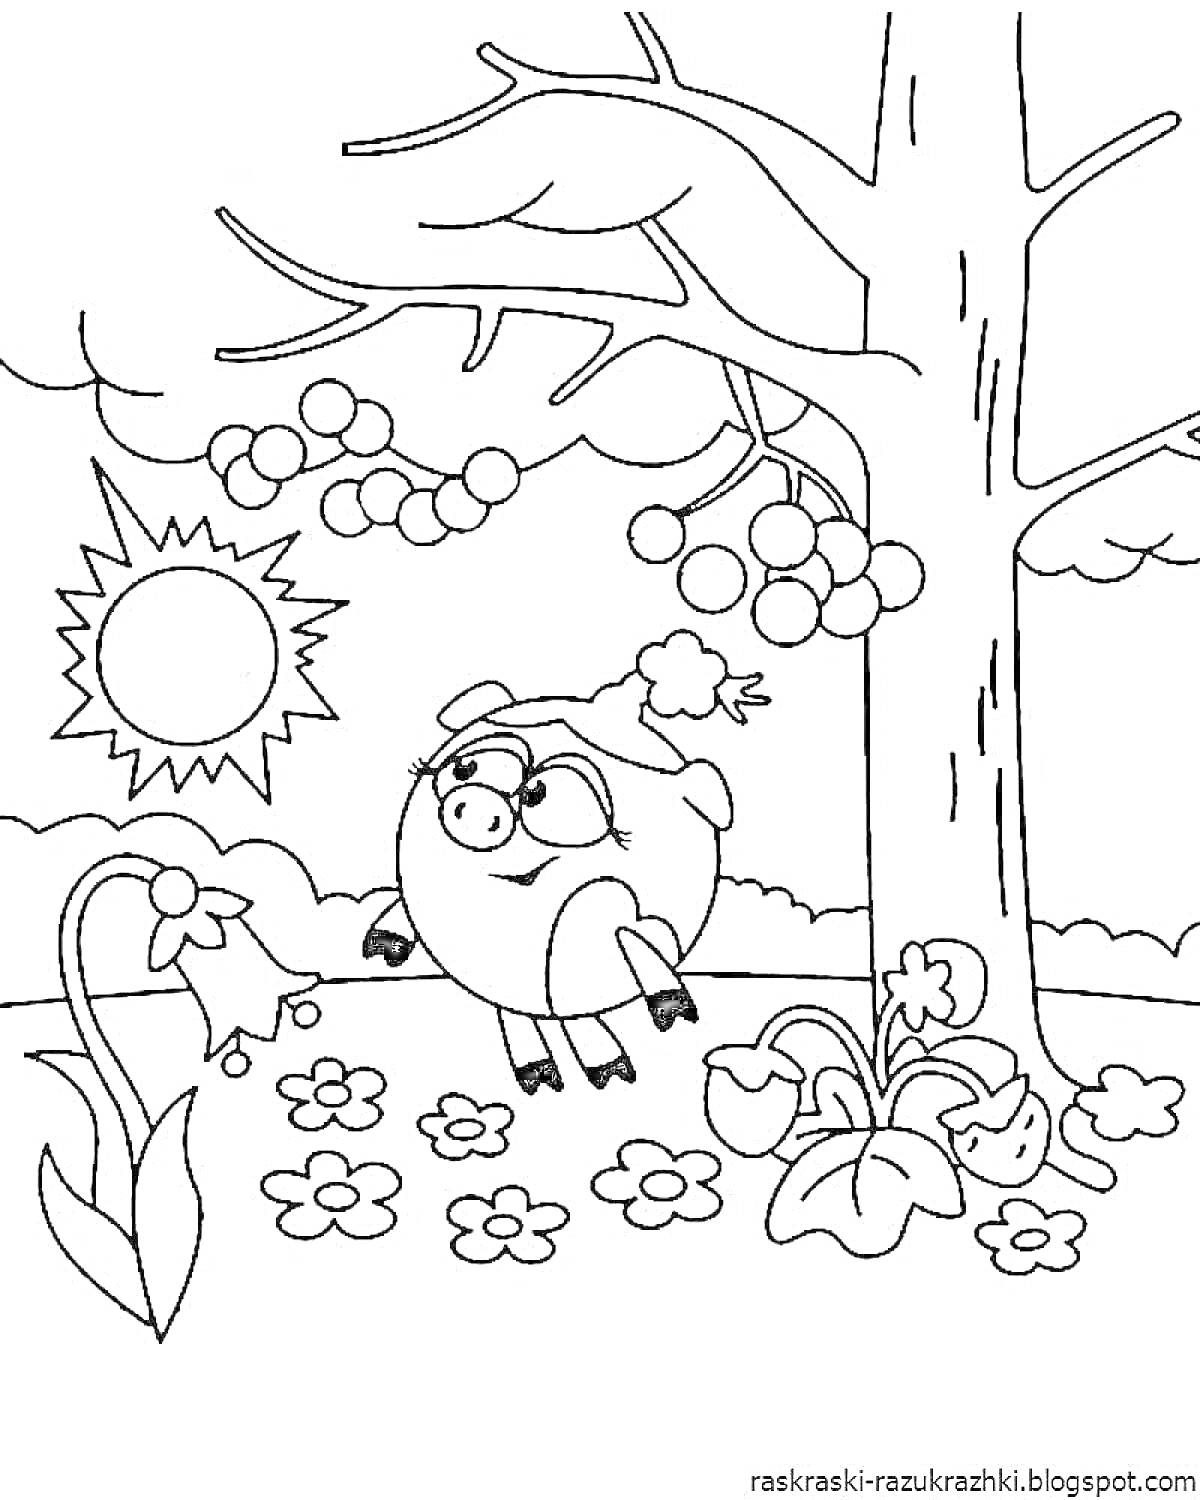 Смешарики. Нюша под деревом с цветами и ягодами на фоне солнца